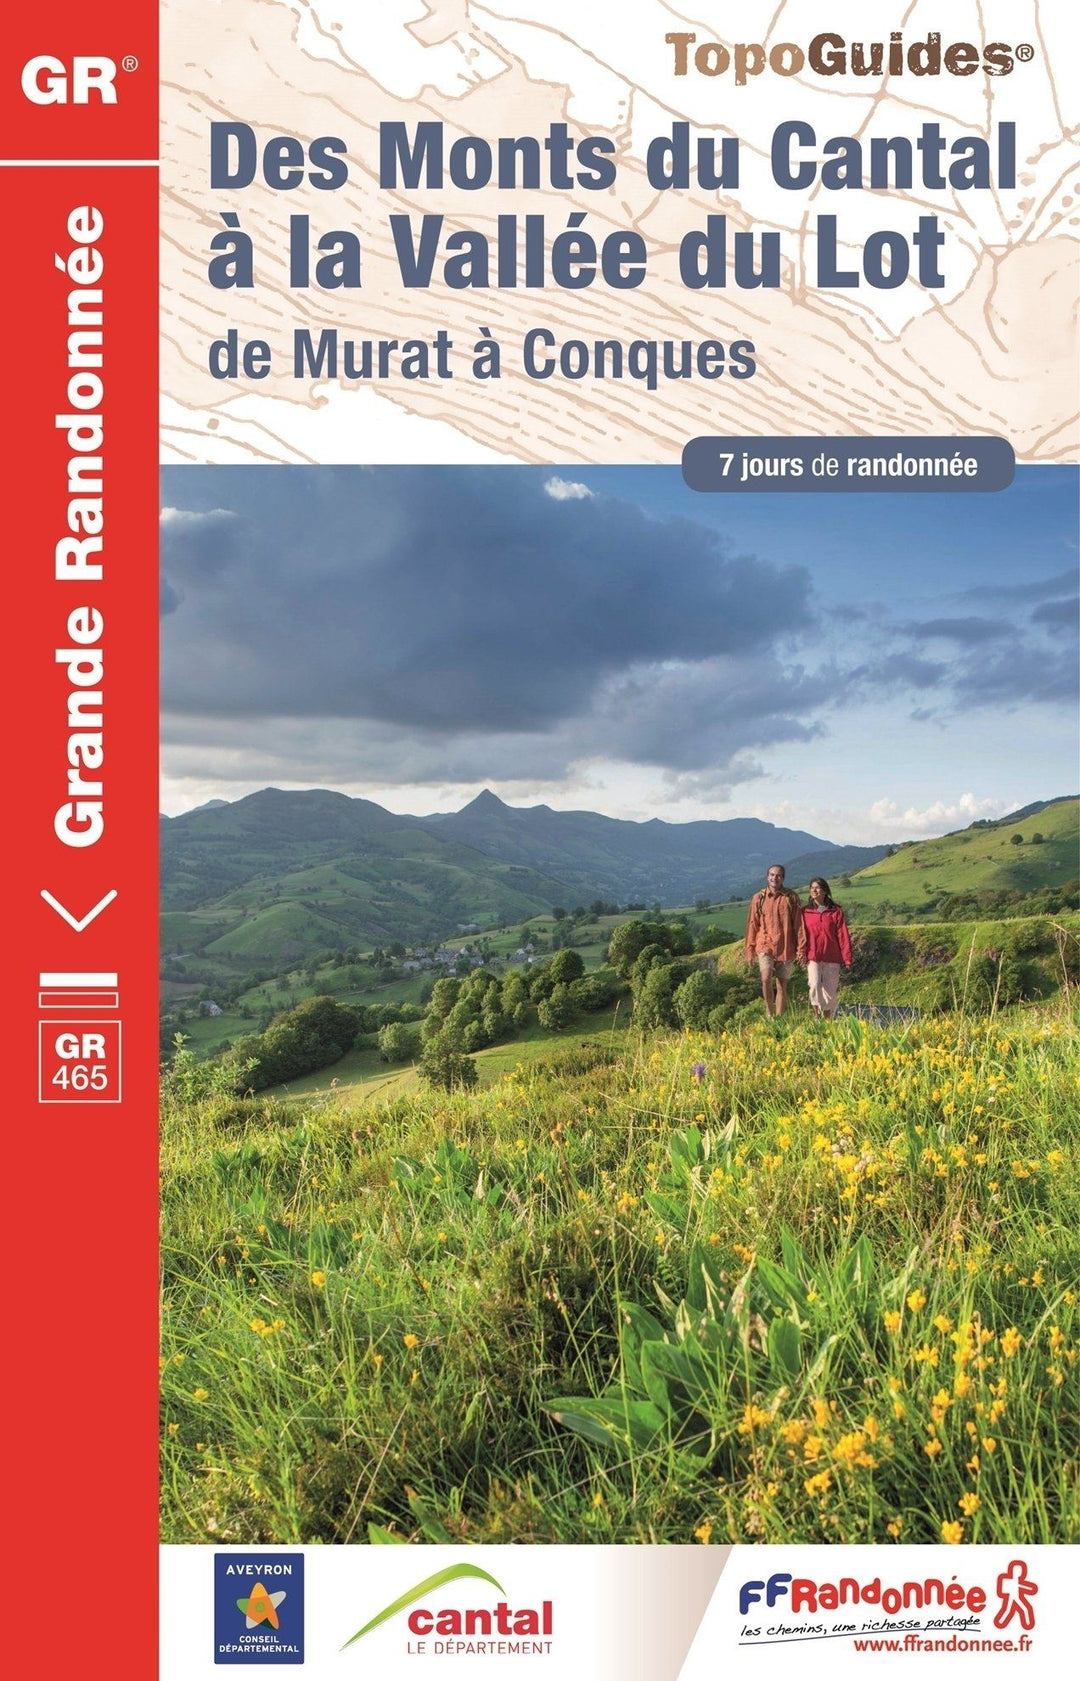 Topoguide de randonnée - Des Monts du Cantal à la vallée du Lot - GR465 | FFR guide de randonnée FFR - Fédération Française de Randonnée 